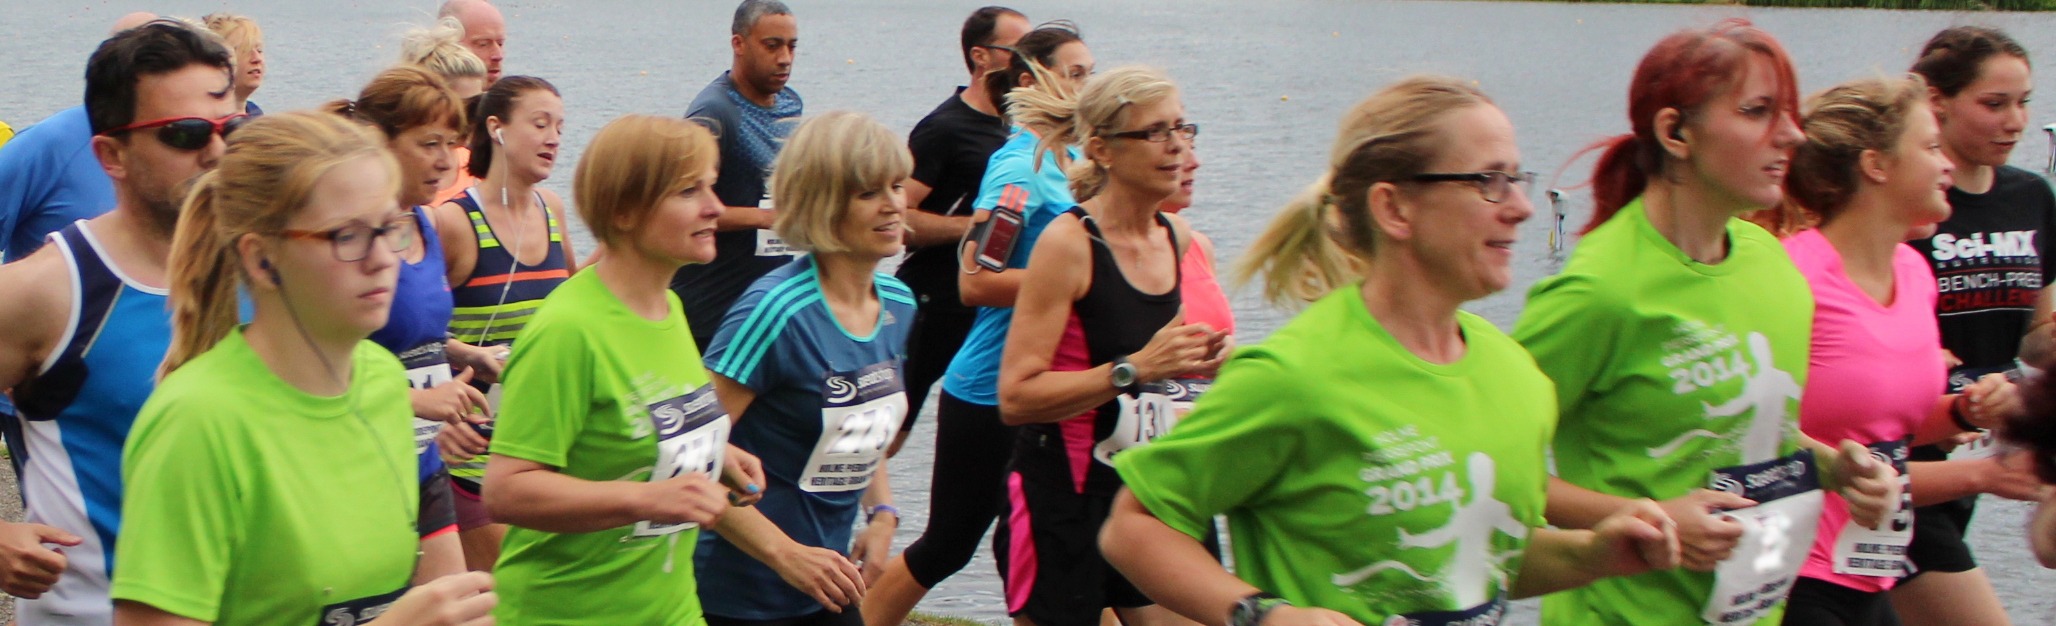 Women running a race